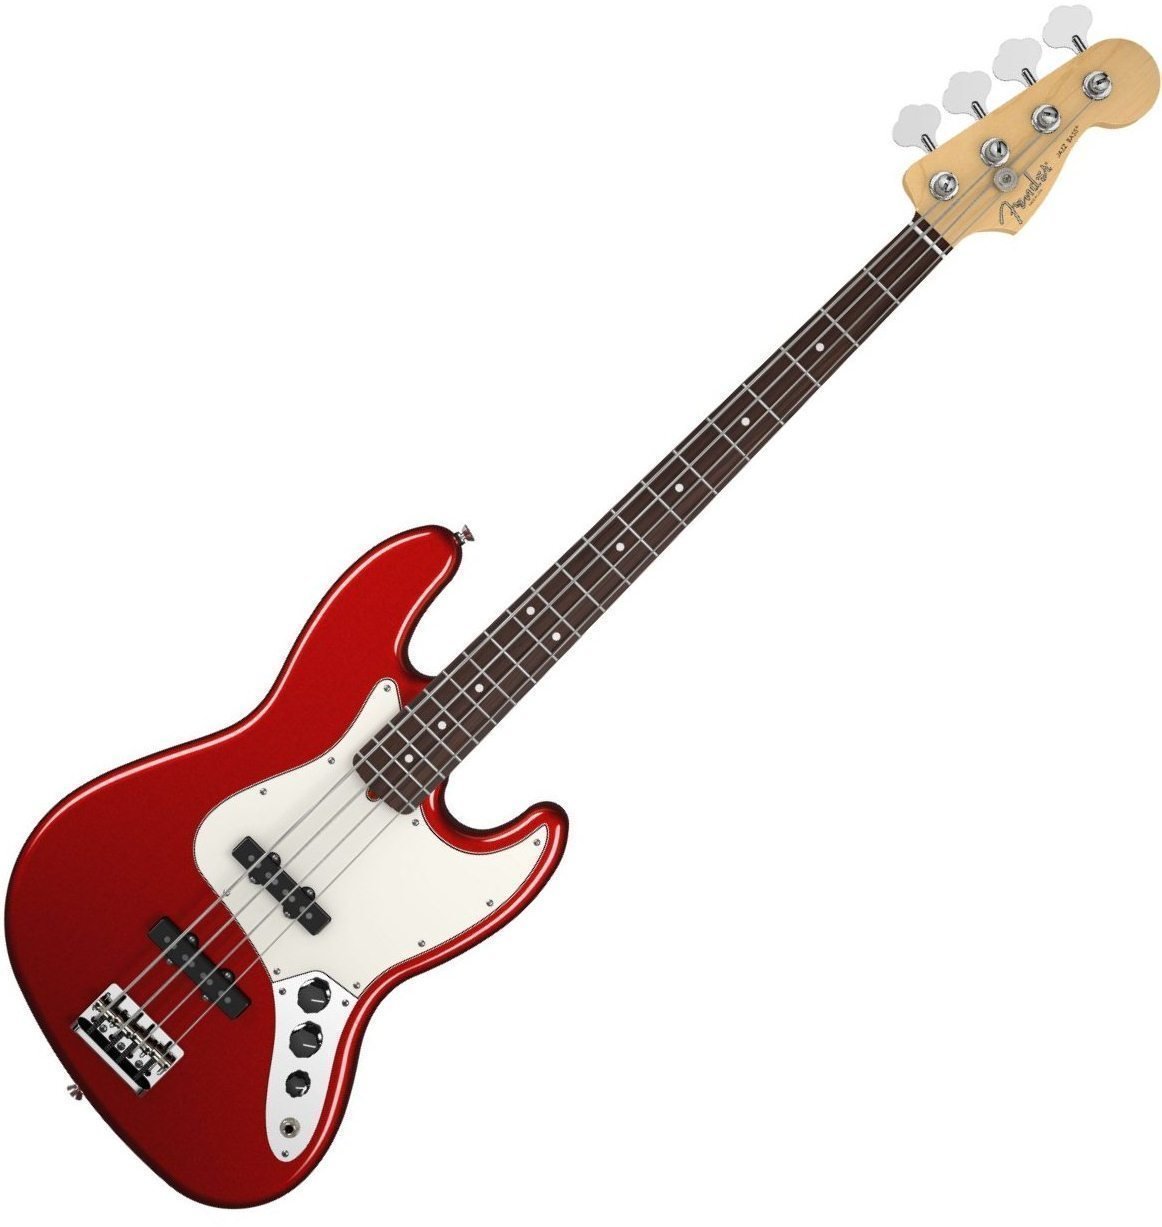 E-Bass Fender American Standard Jazz Bass Rosewood Fingerboard Mystic Red